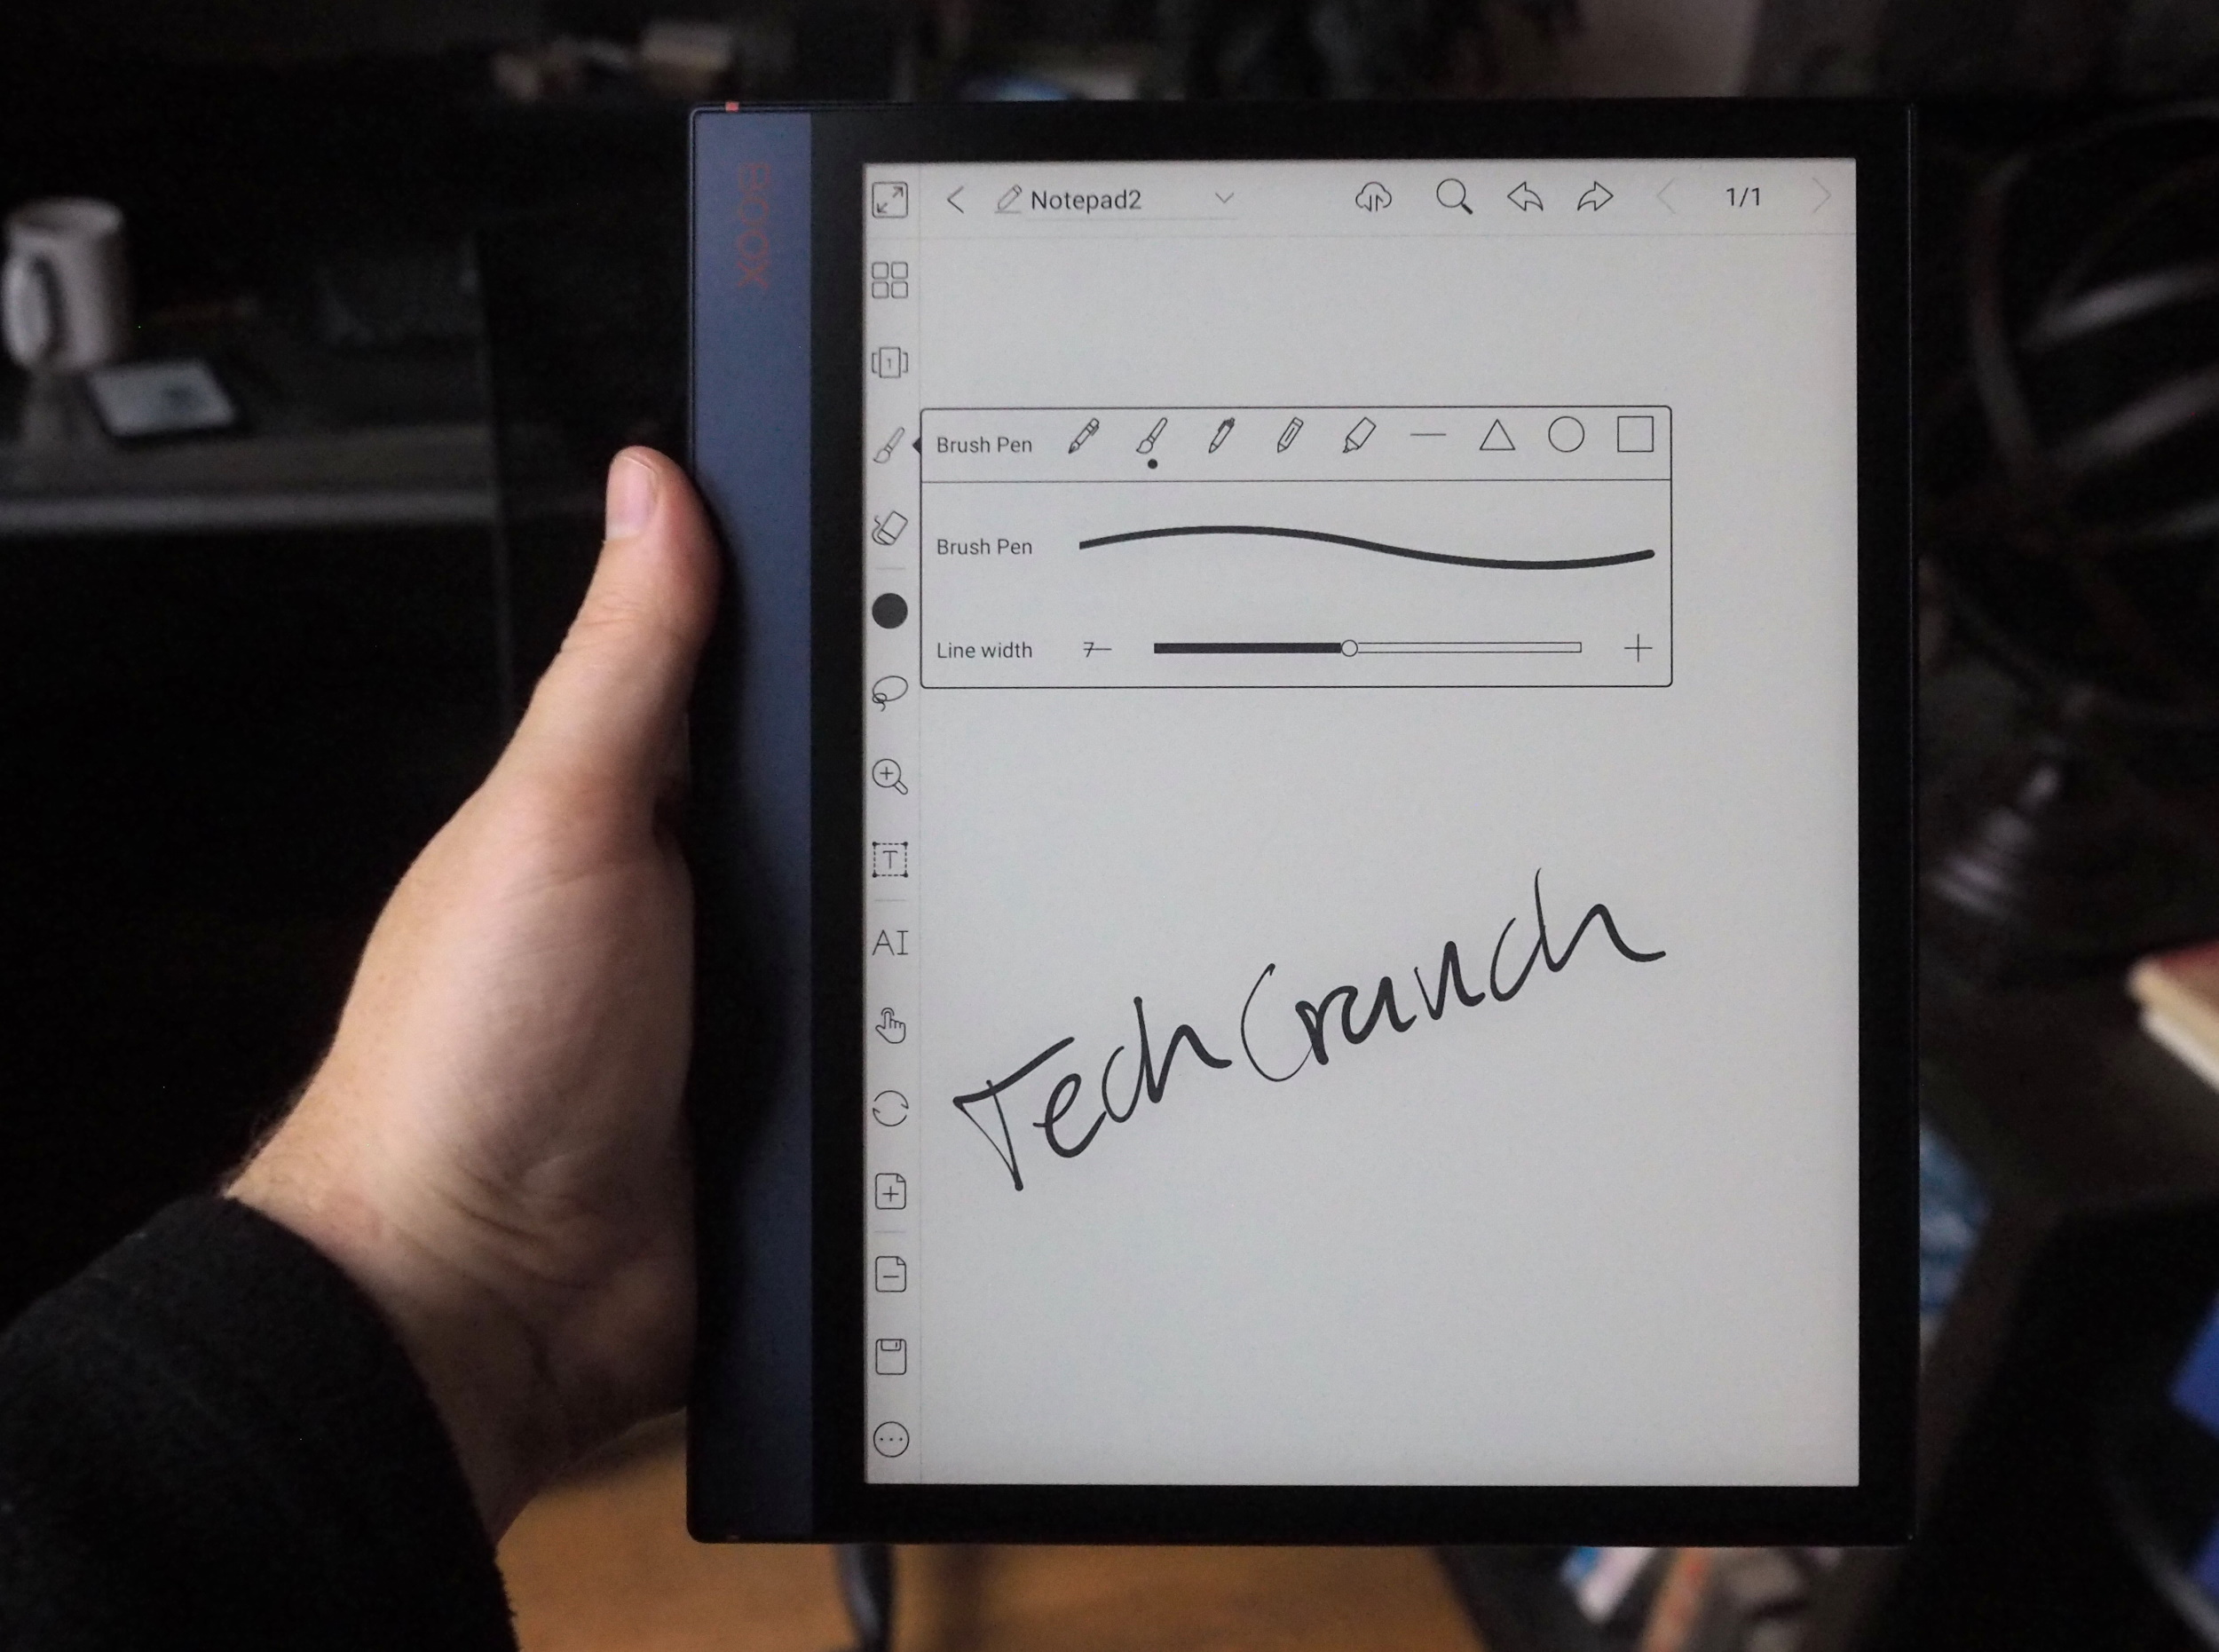 Vue d'une interface de tablette avec une écriture manuscrite dessus.